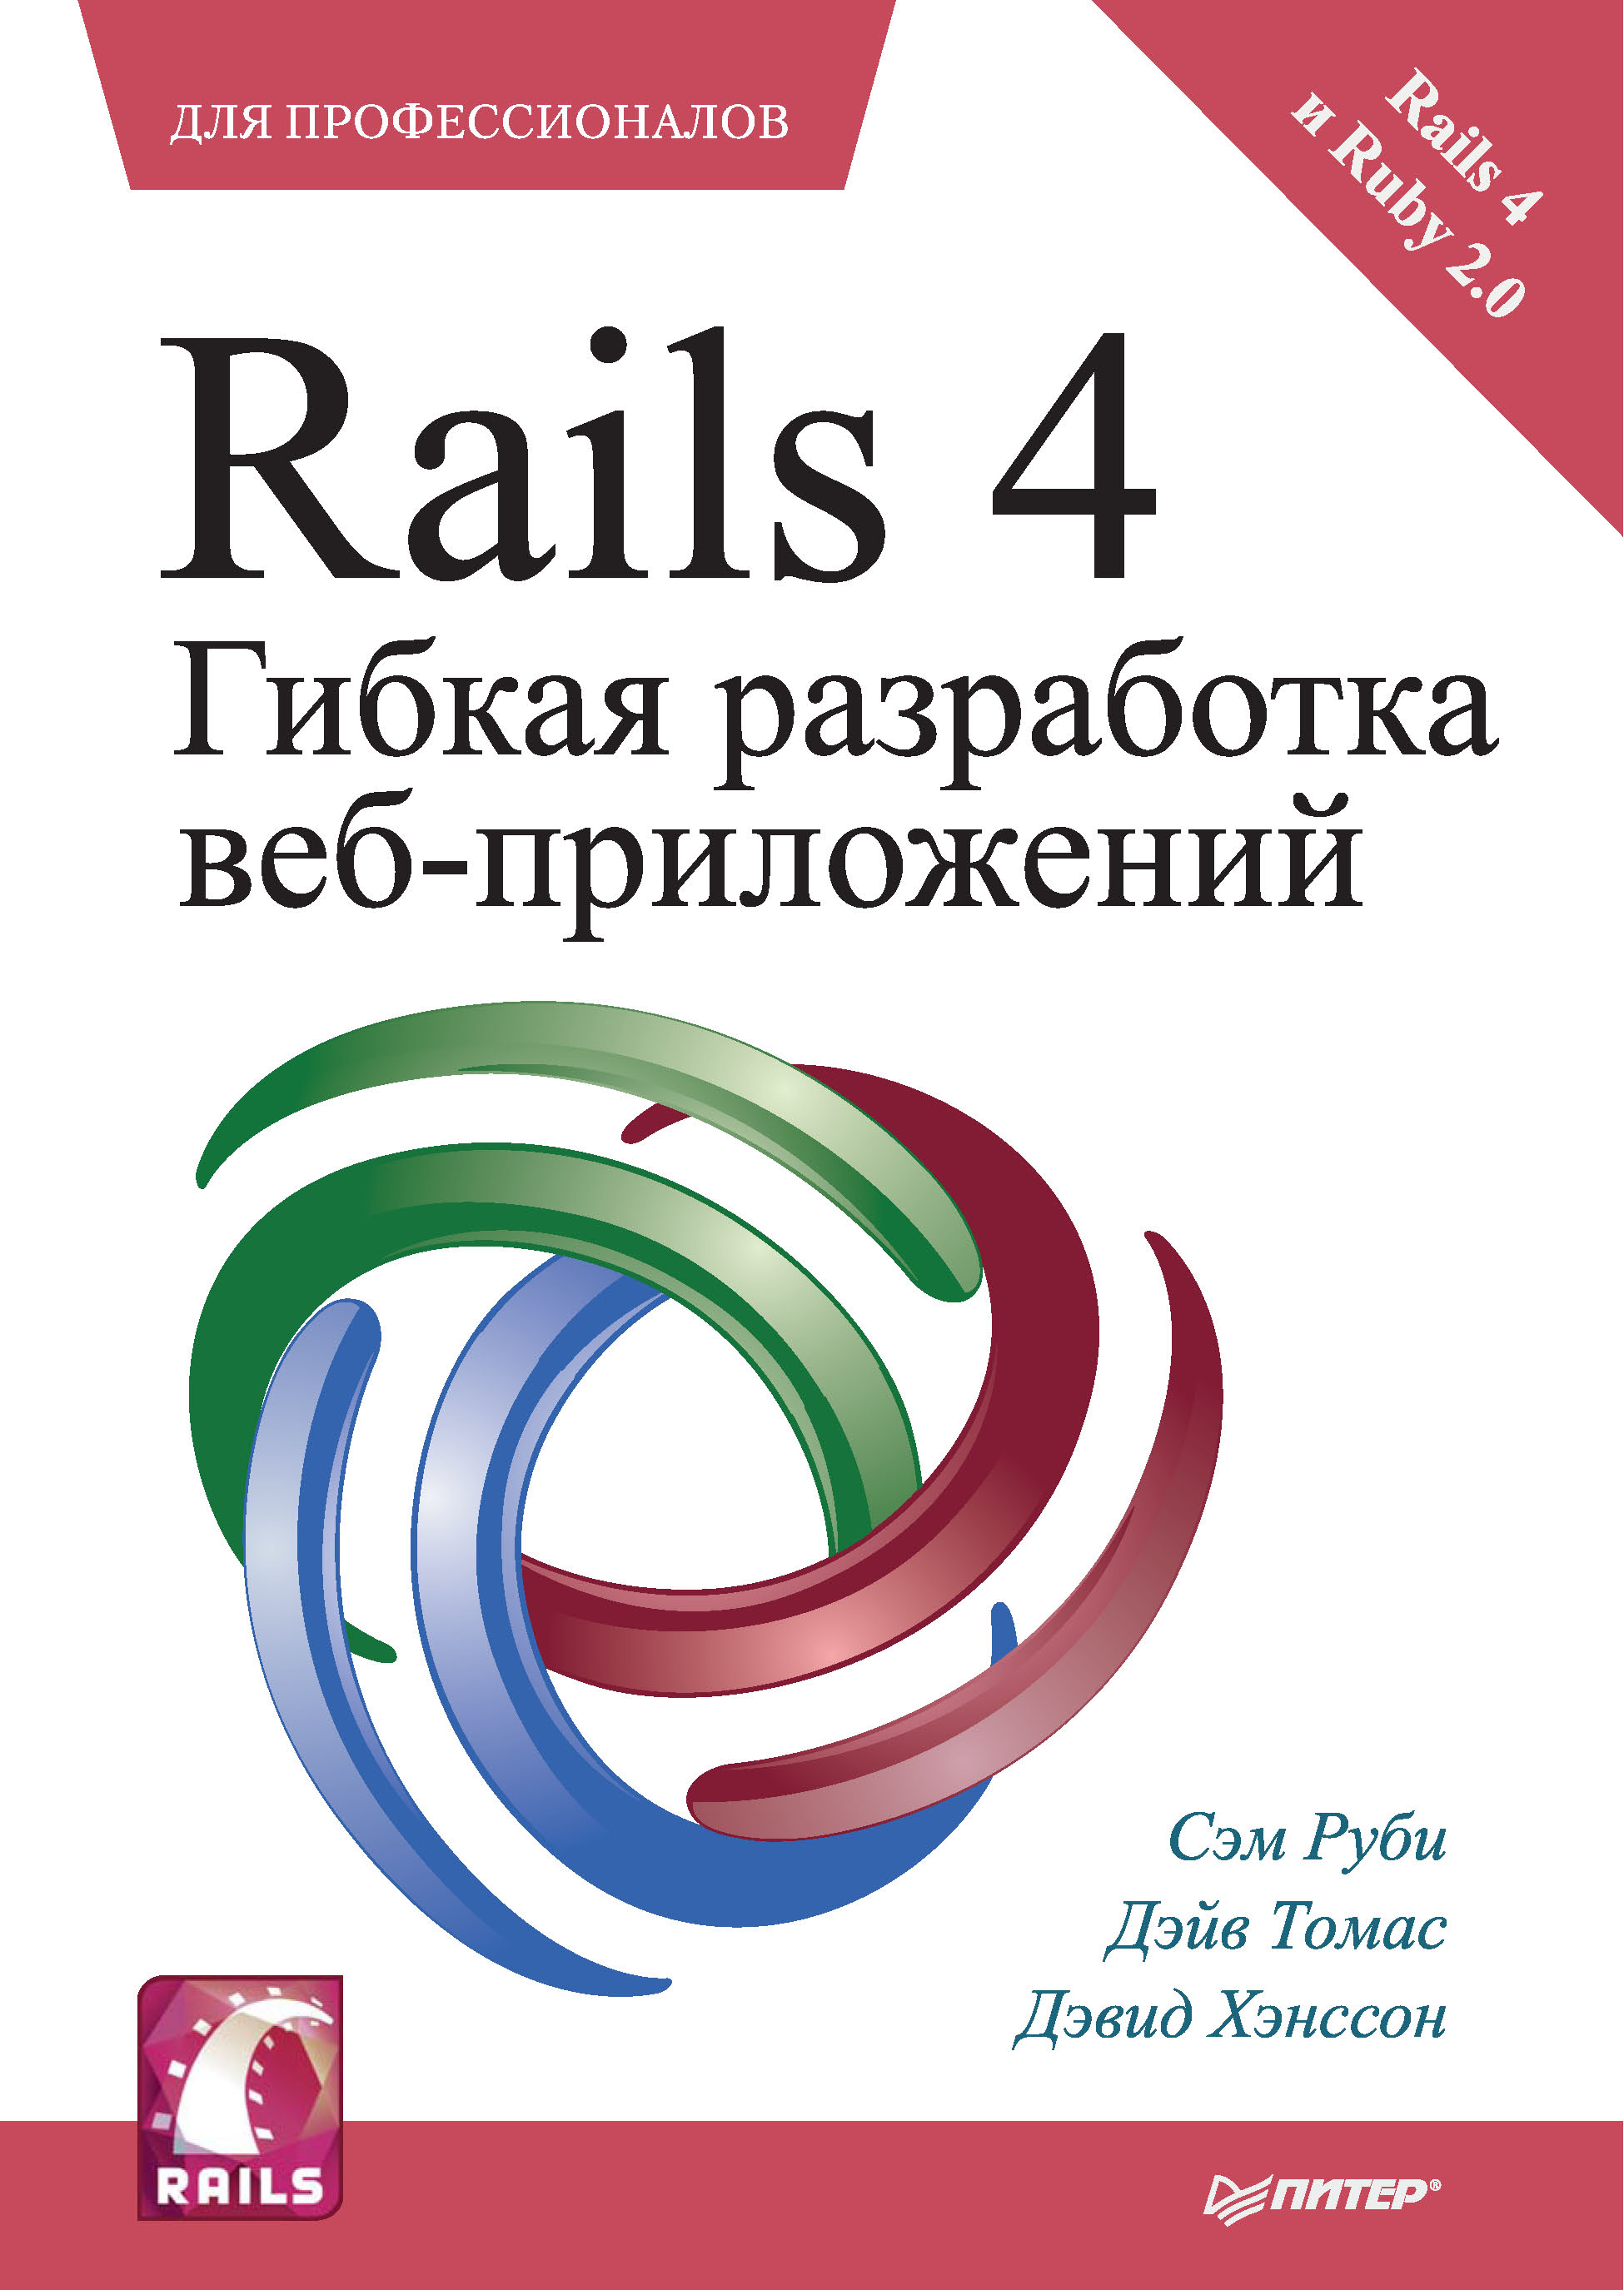 Rails 4.Гибкая разработка веб-приложений